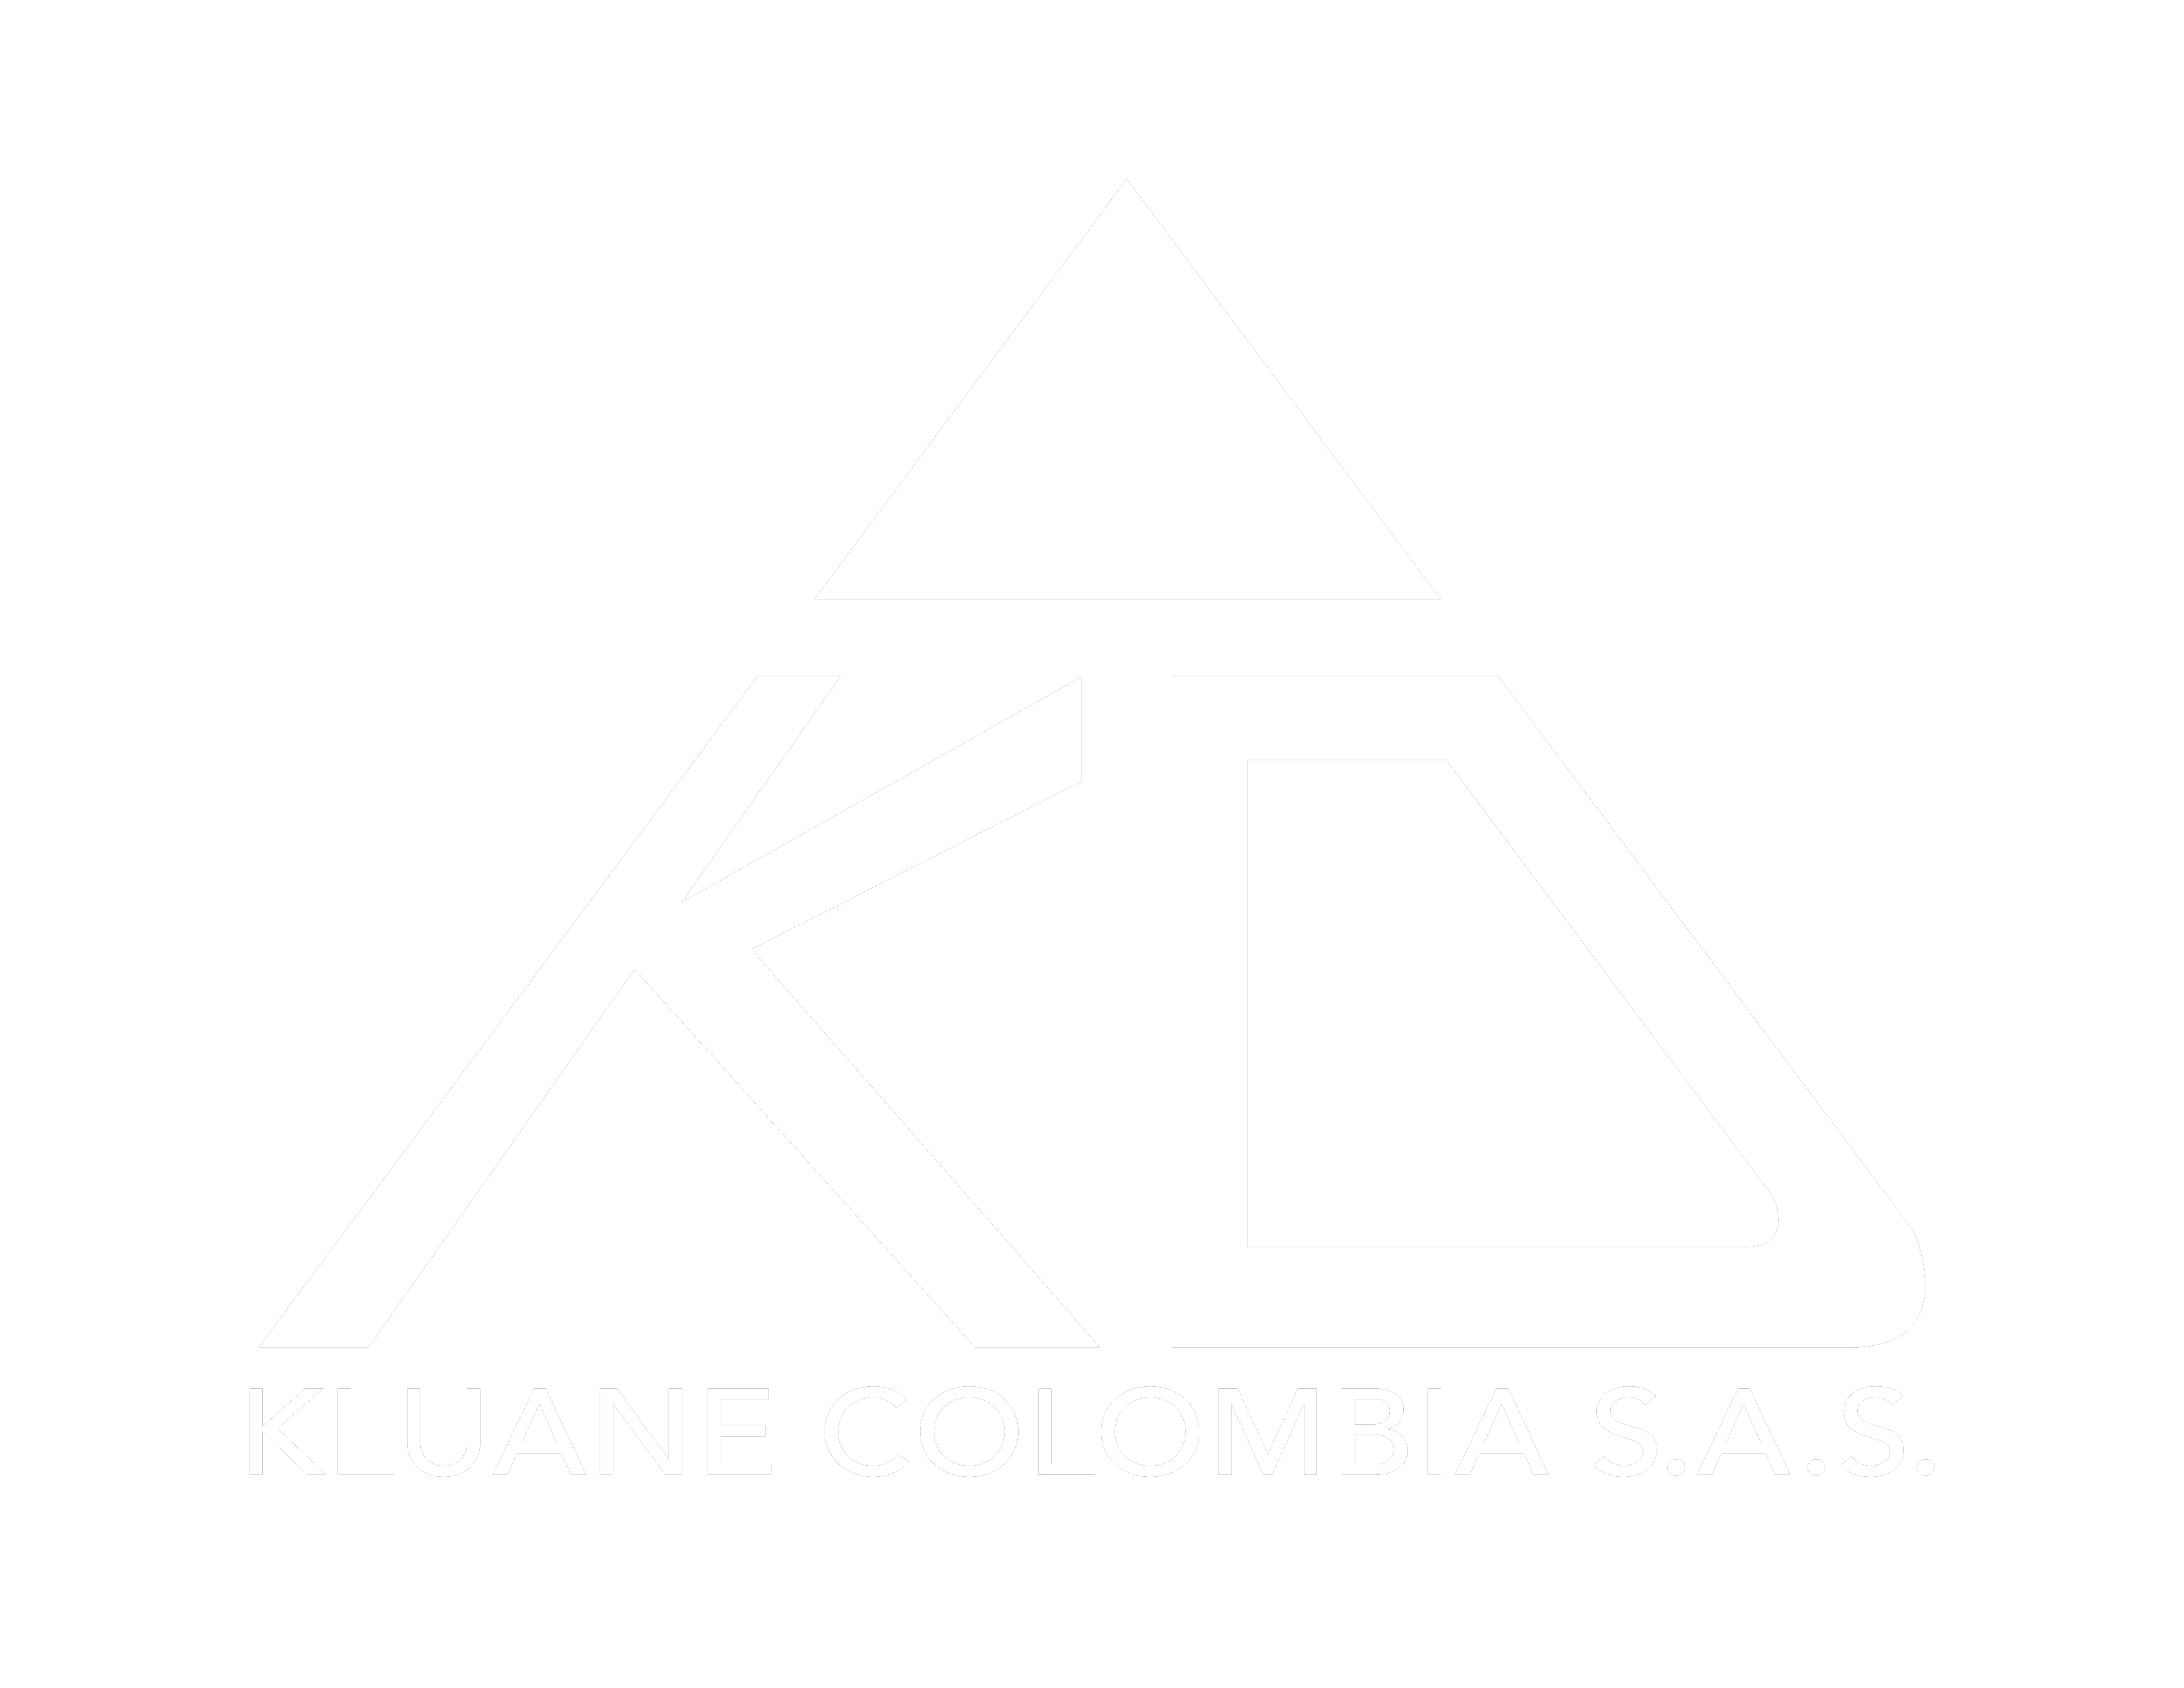 Kluane Colombia